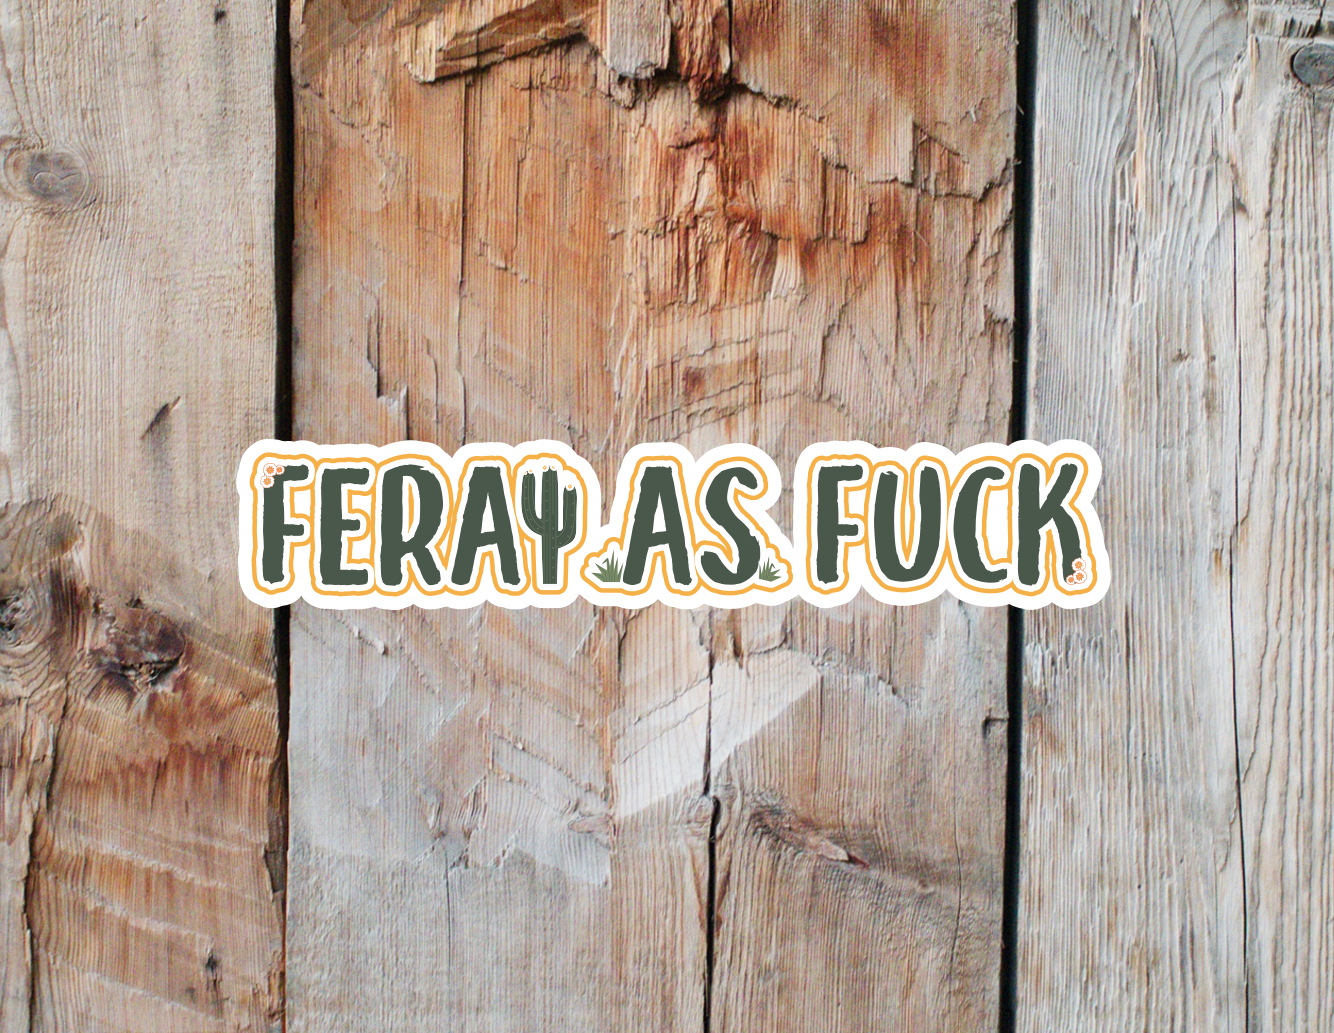 Feral As Fuck Vinyl Sticker| Wild Child Sticker | Be Feral Sticker